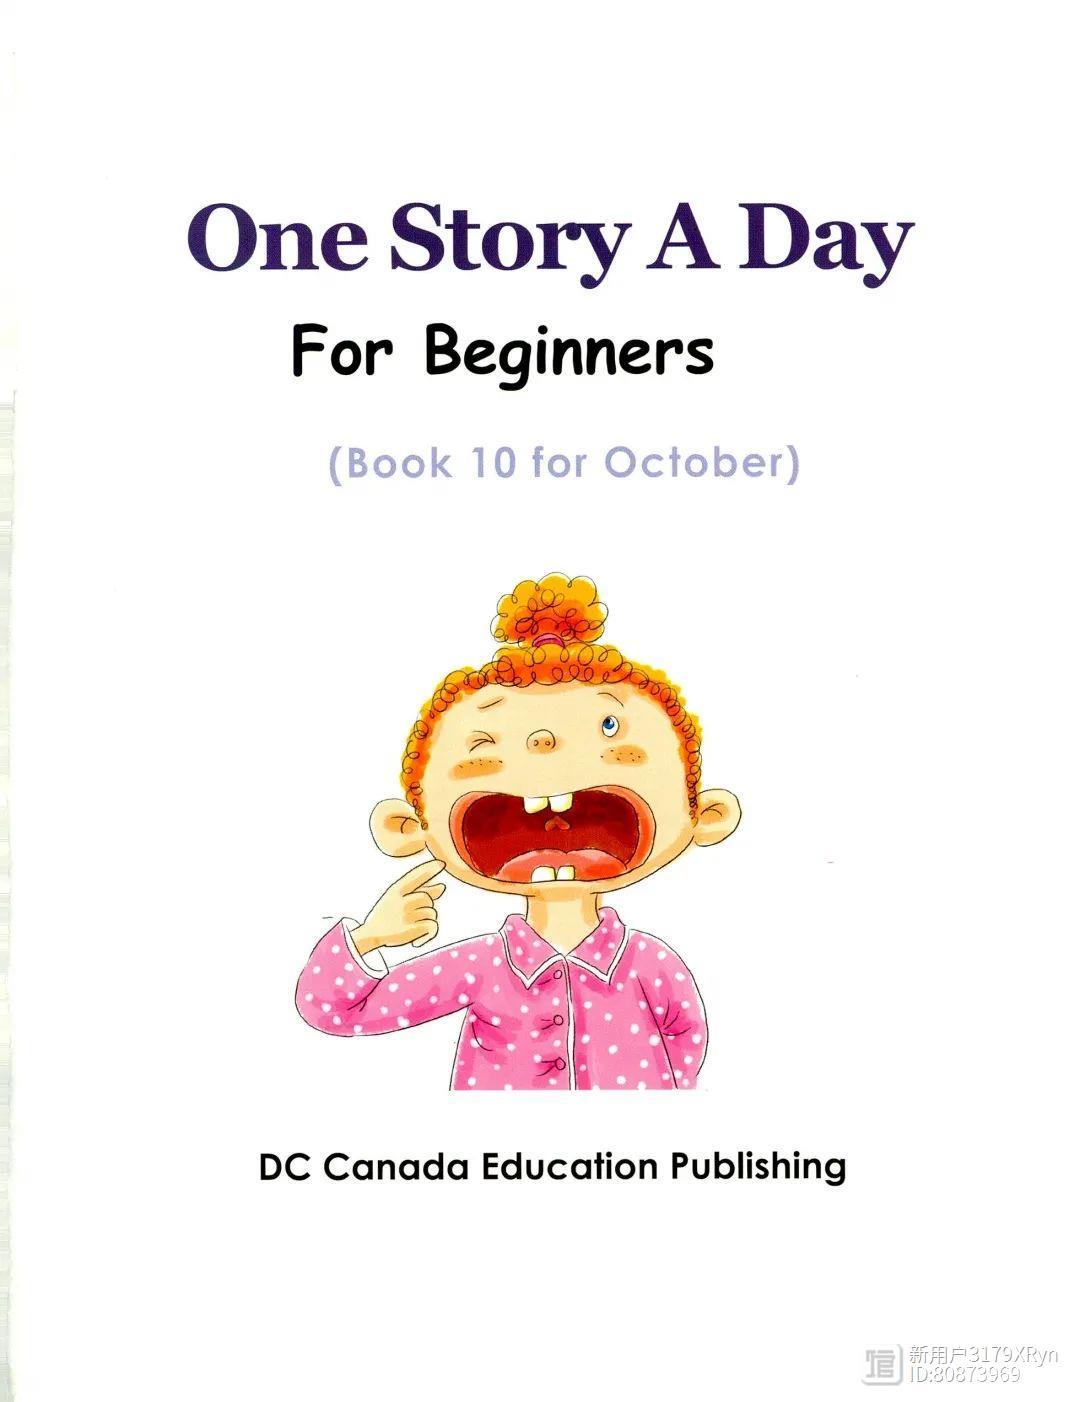 明天开始阅读打卡 | One story a day幼儿版（10月31篇)